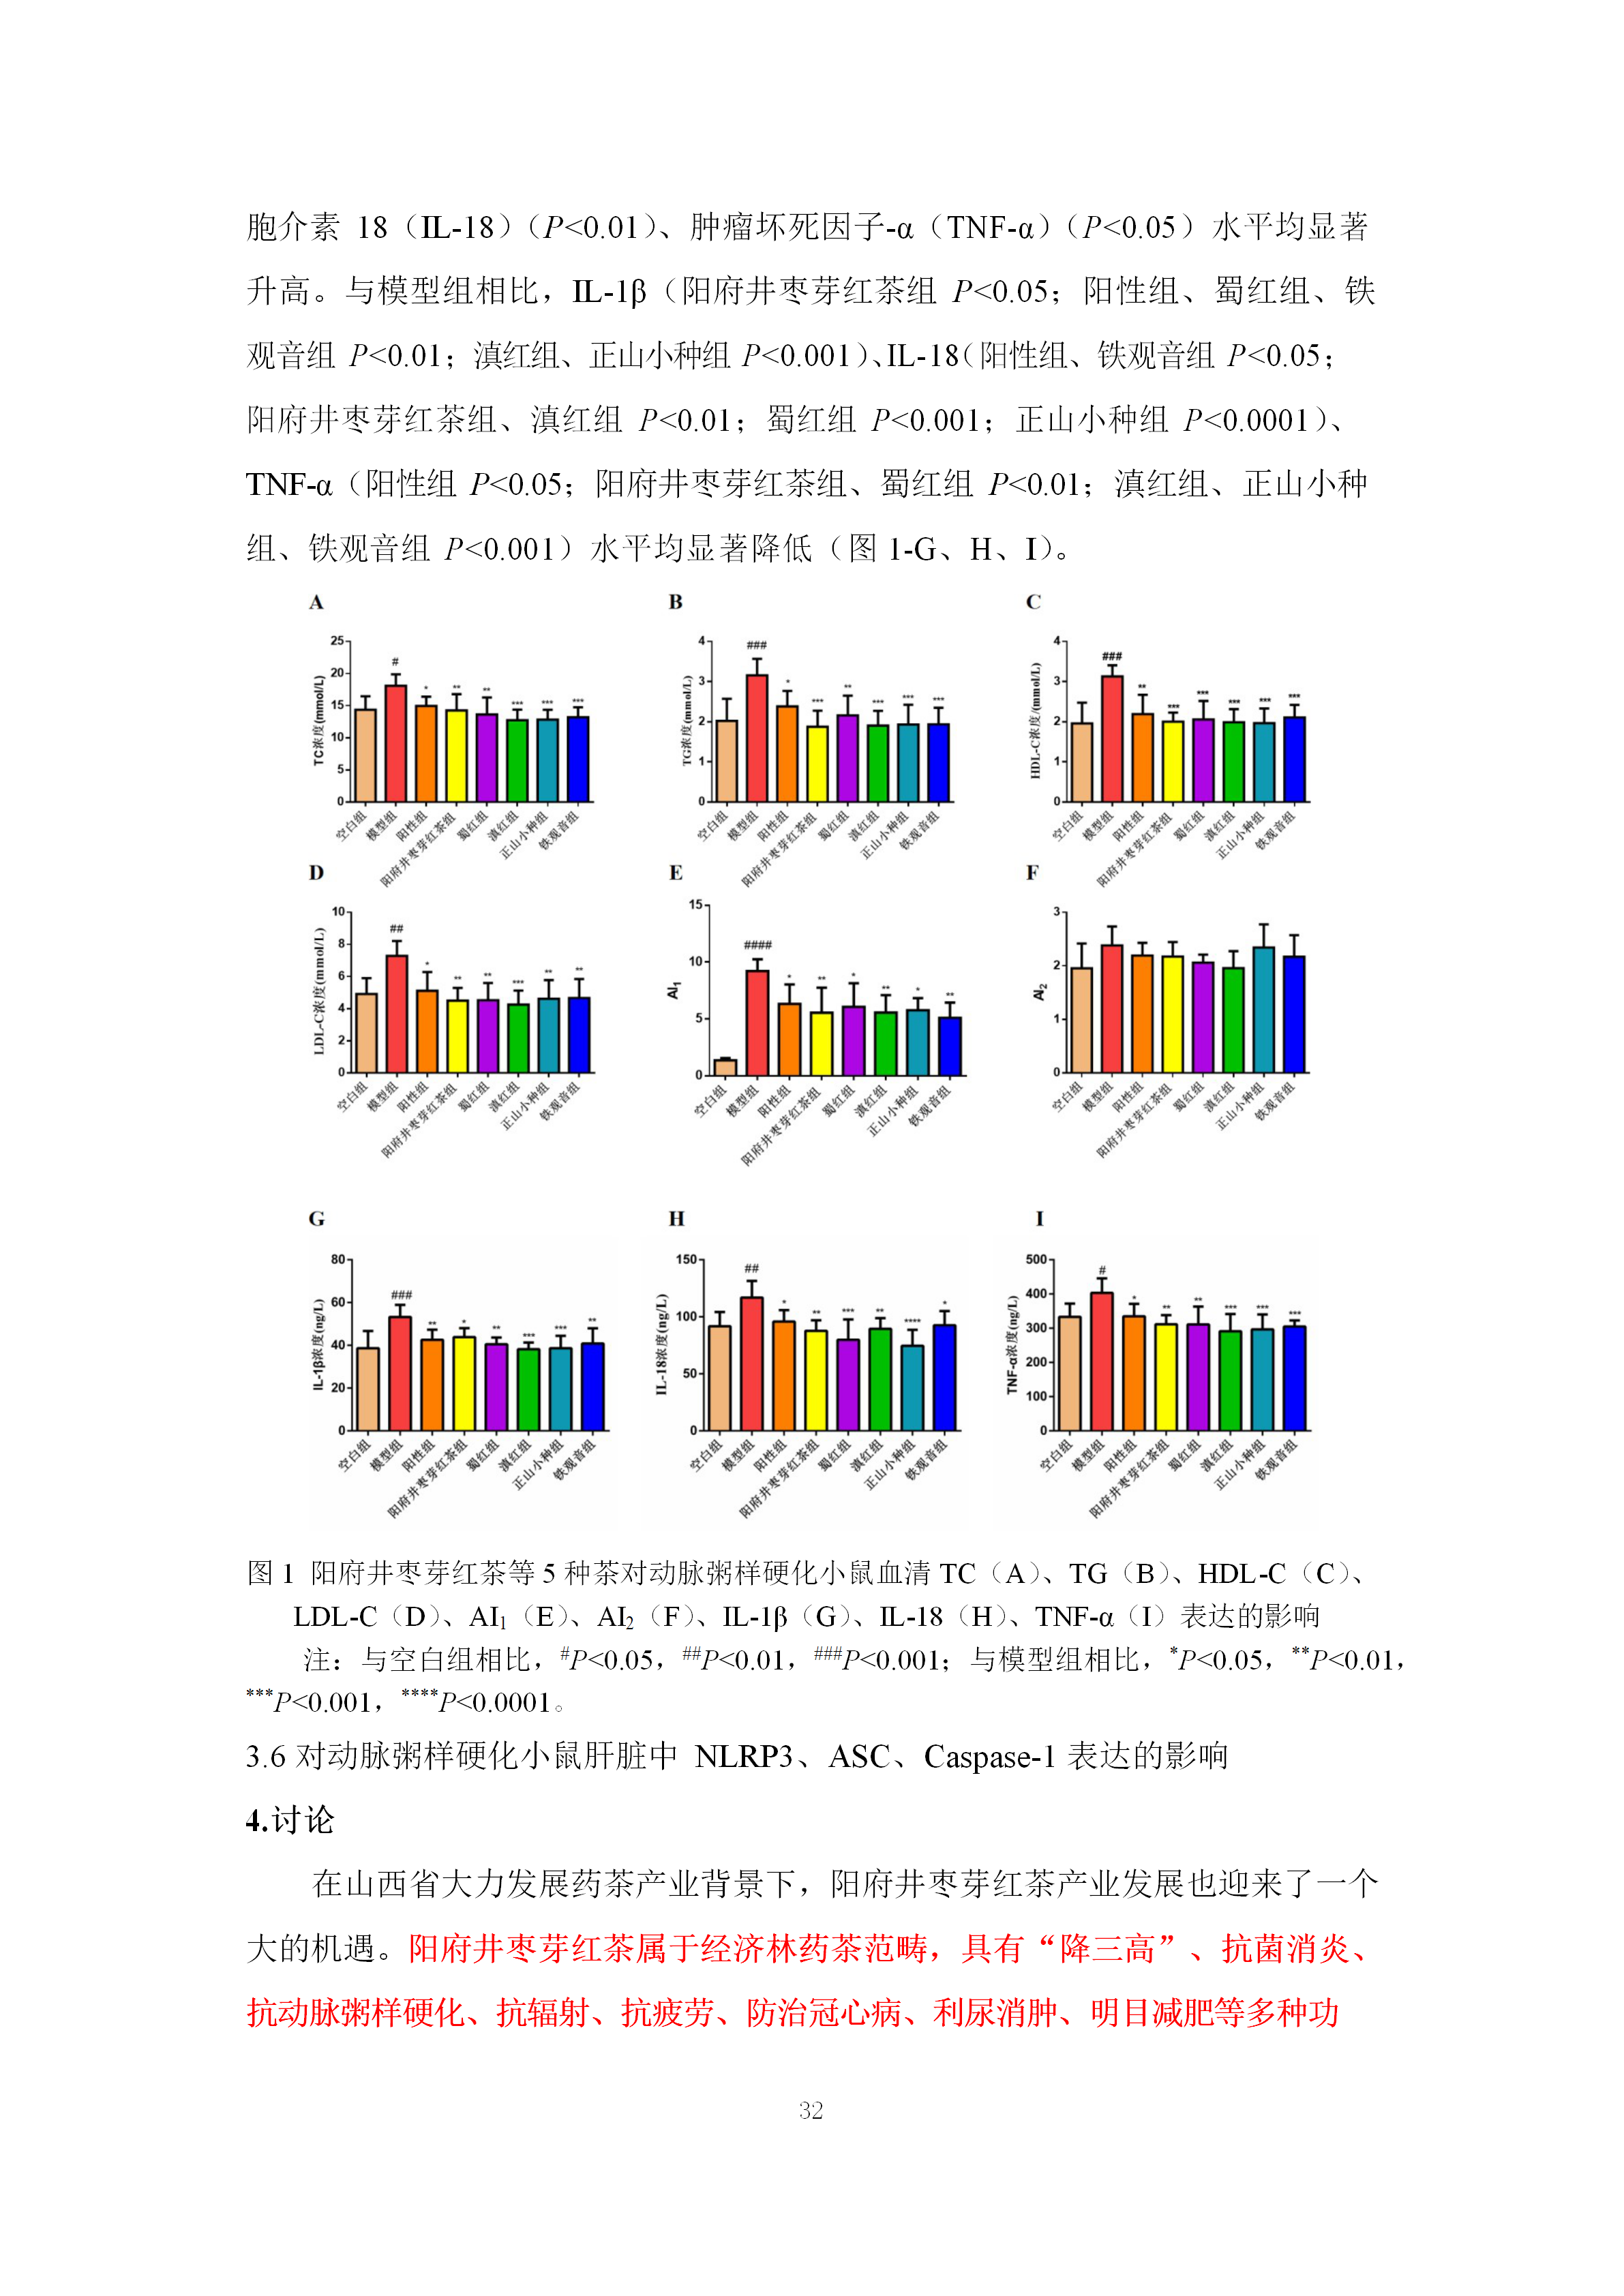 阳府井枣芽红茶功效学试验技术报告8.6.2(1)(1)(1)(1)(1)(1)_35.png